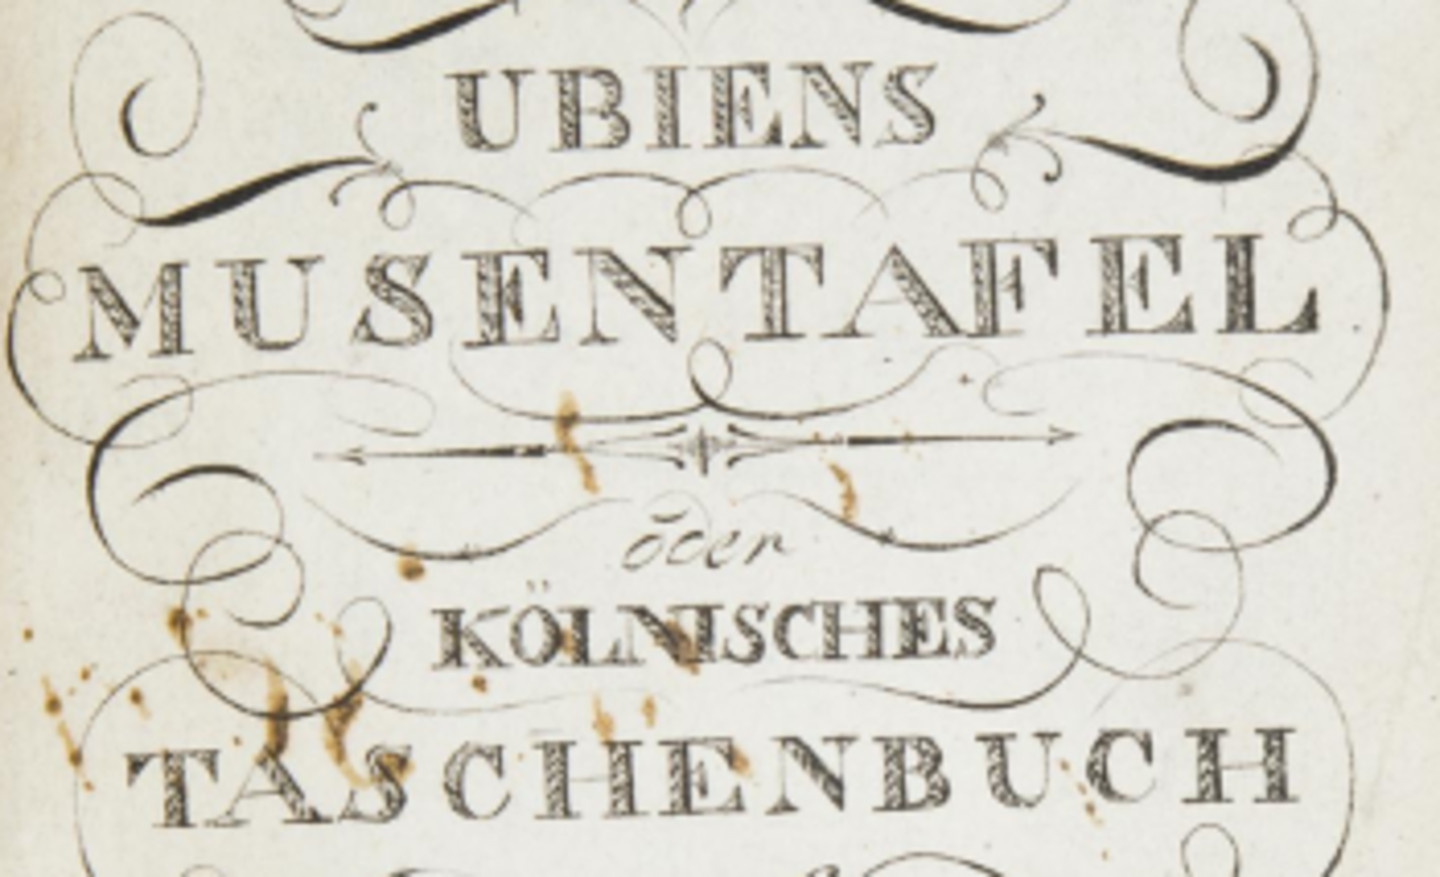 Ubiens Musentafel oder Kölnisches Taschenbuch